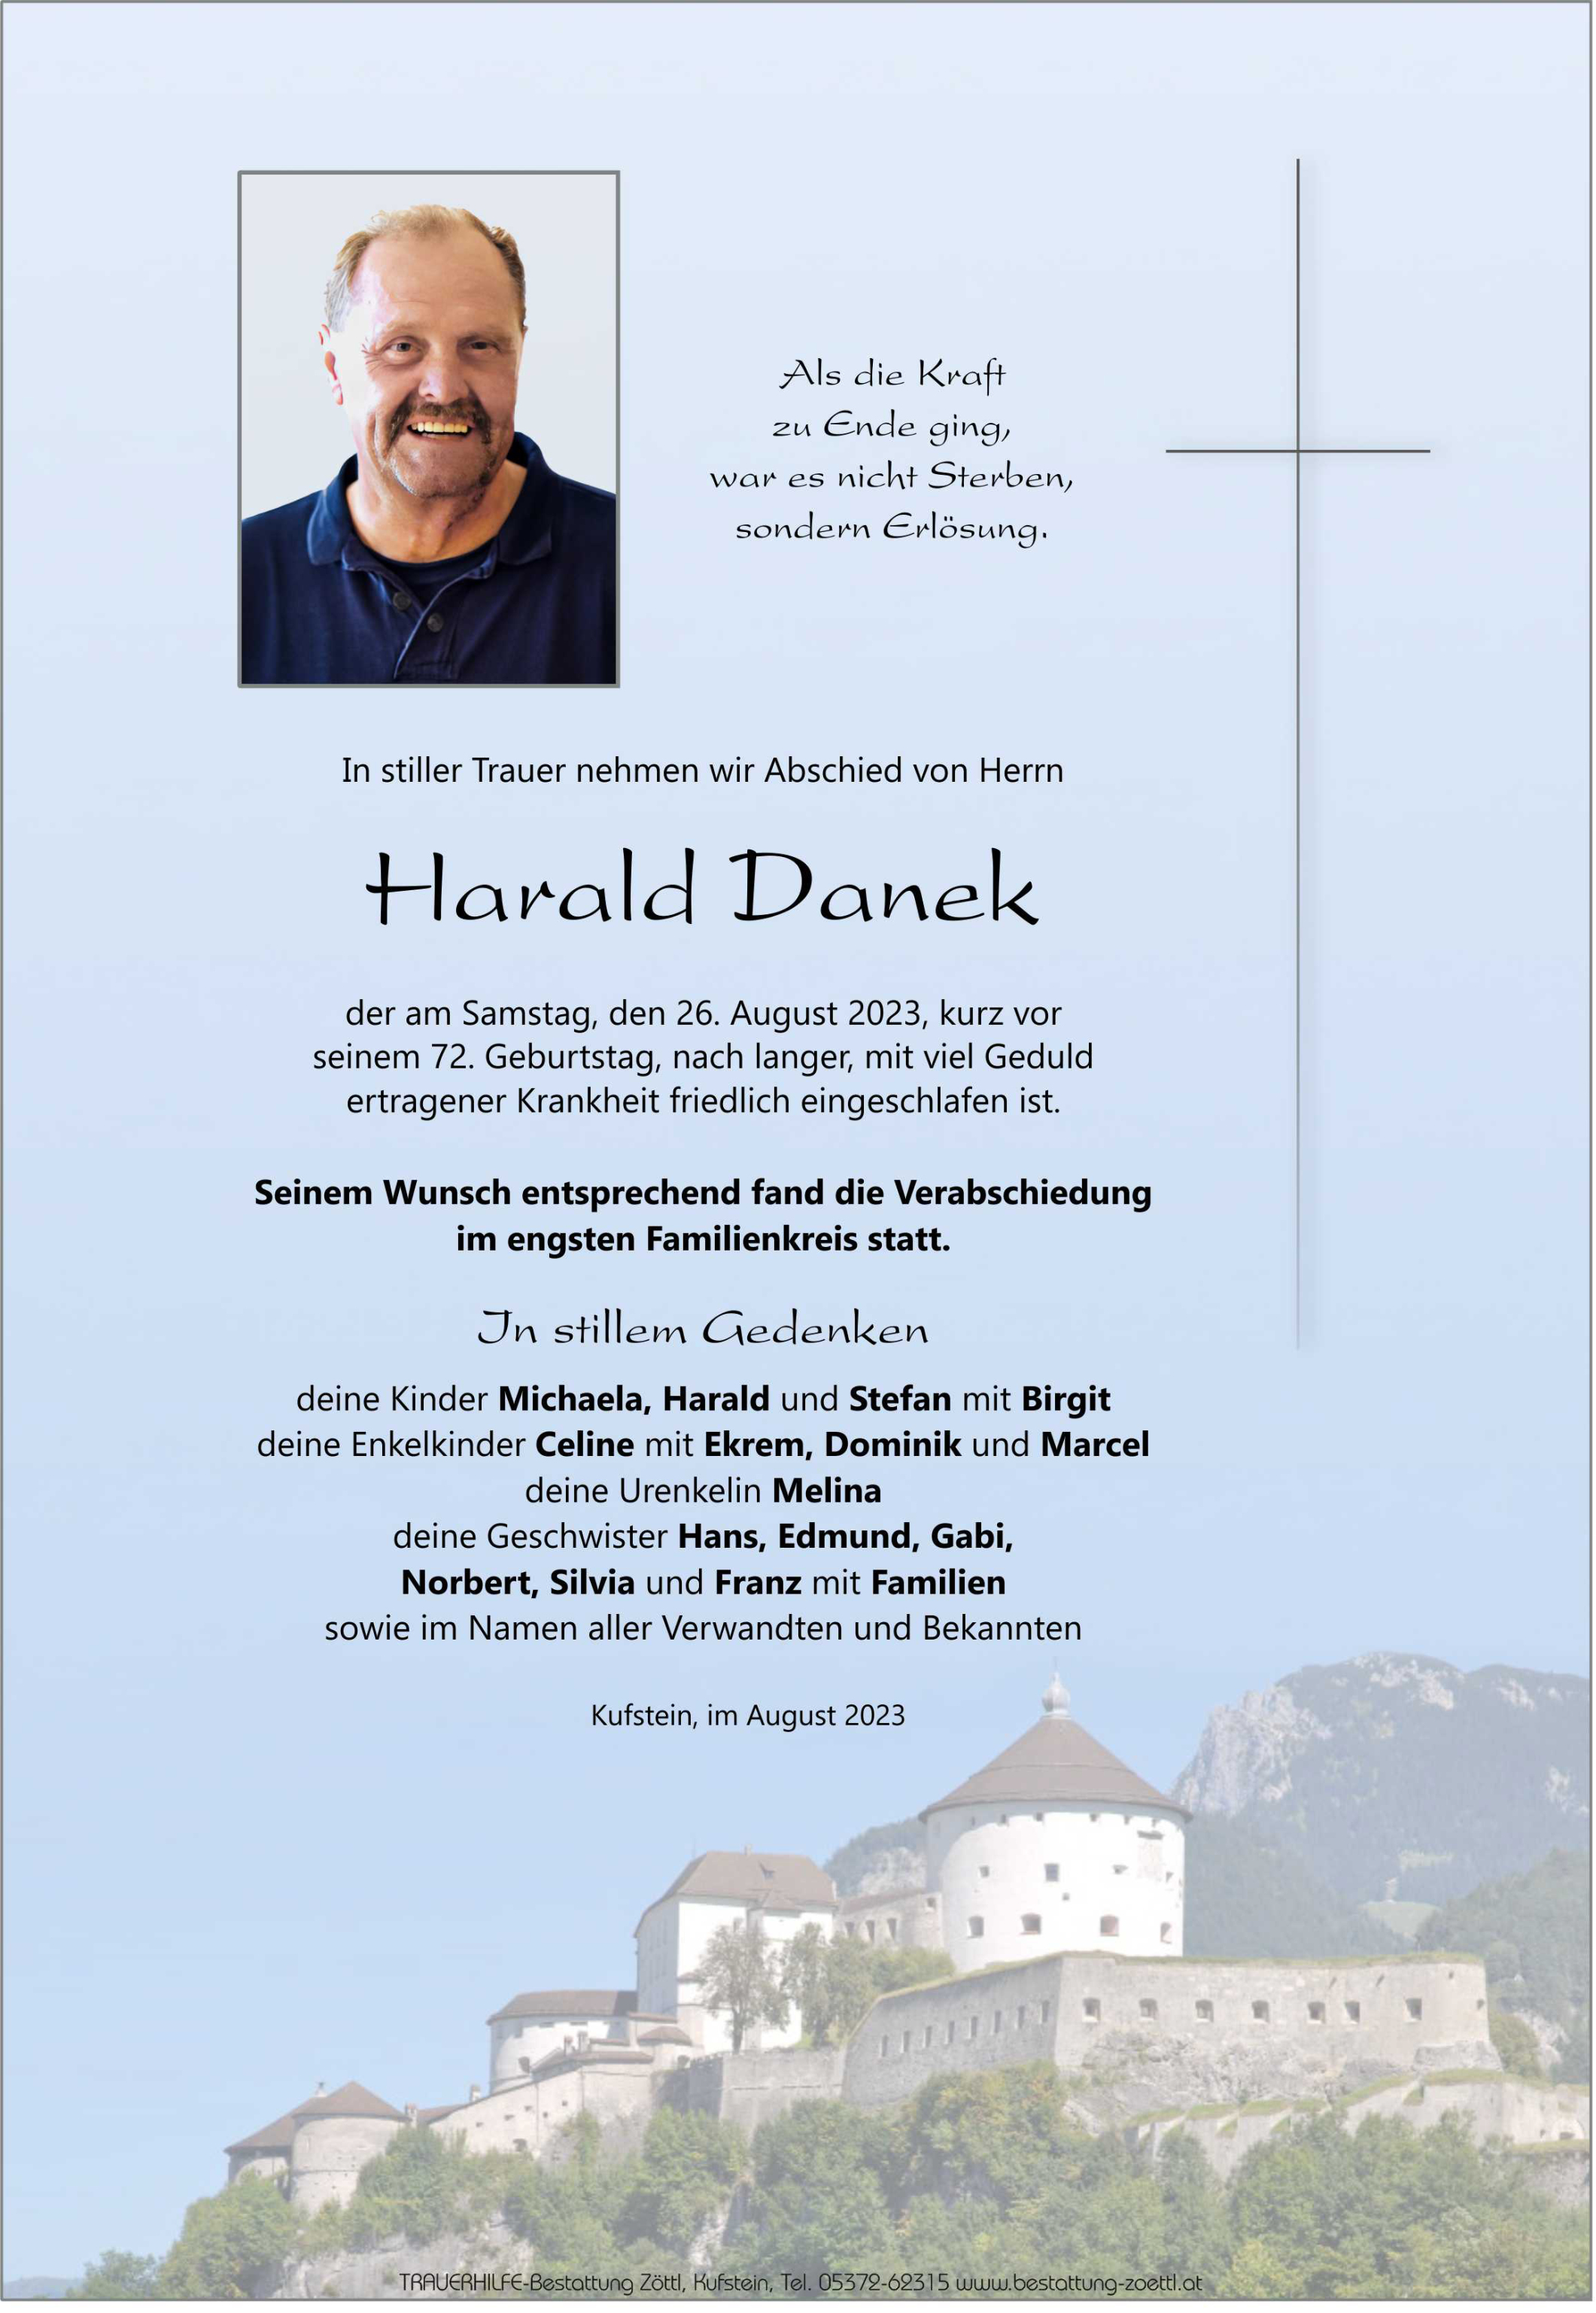 Harald Danek